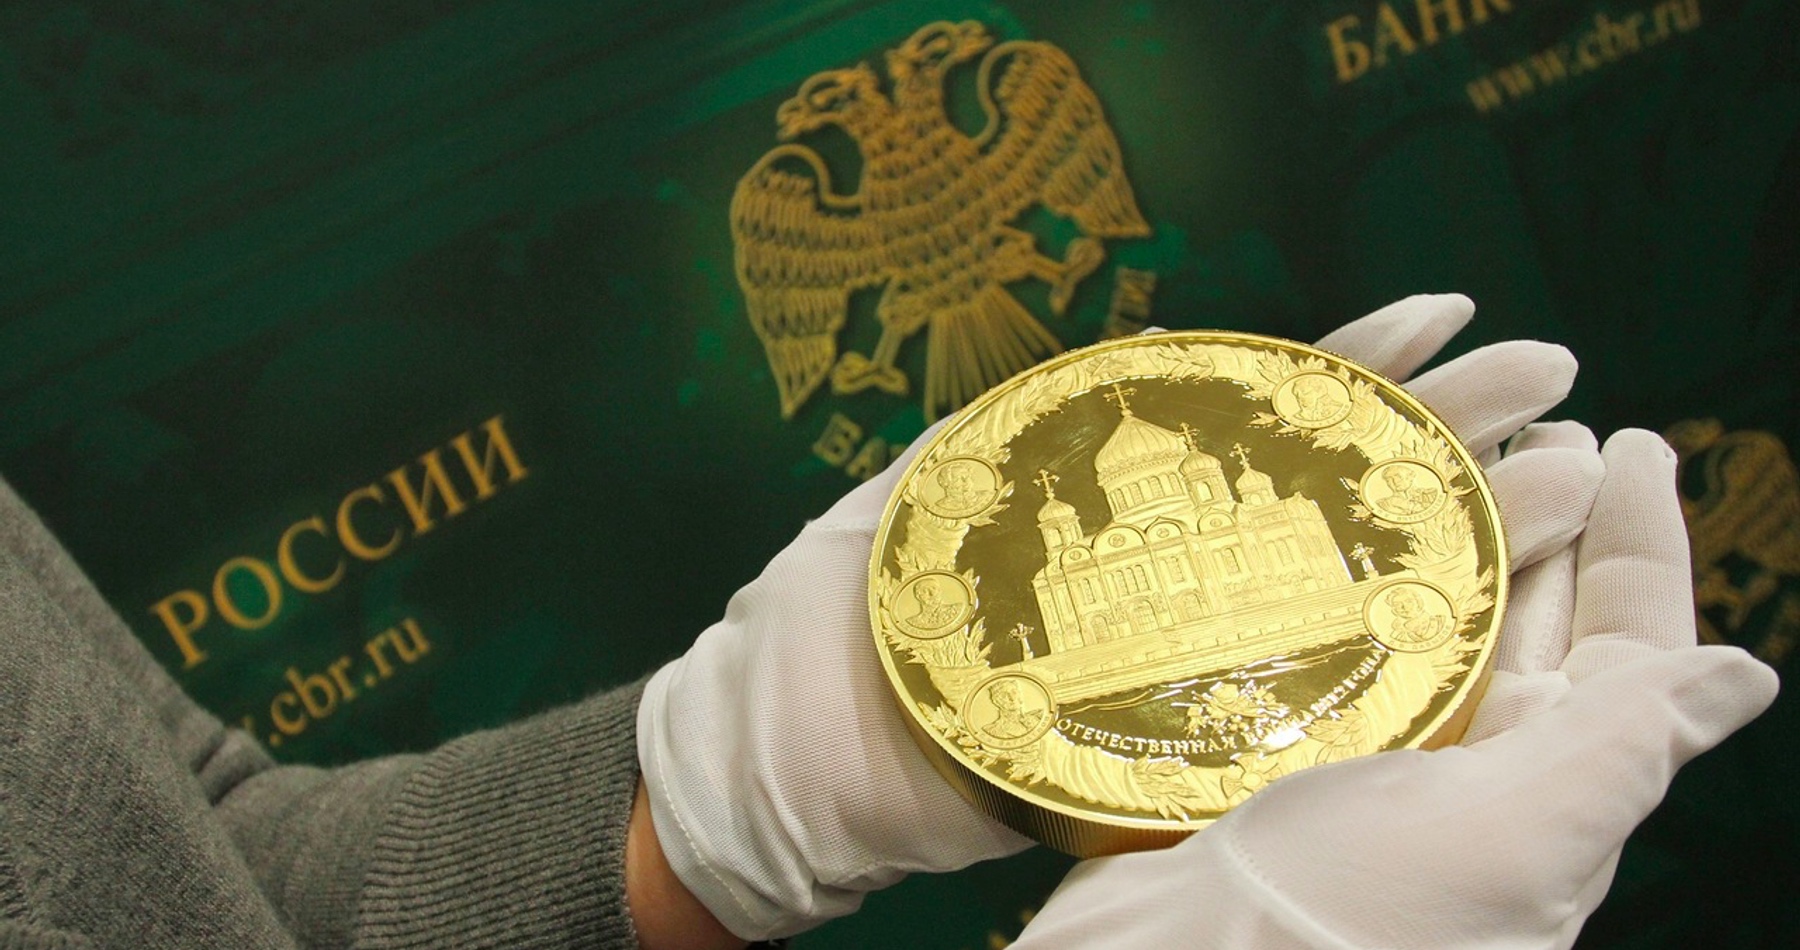 Российский банк монеты